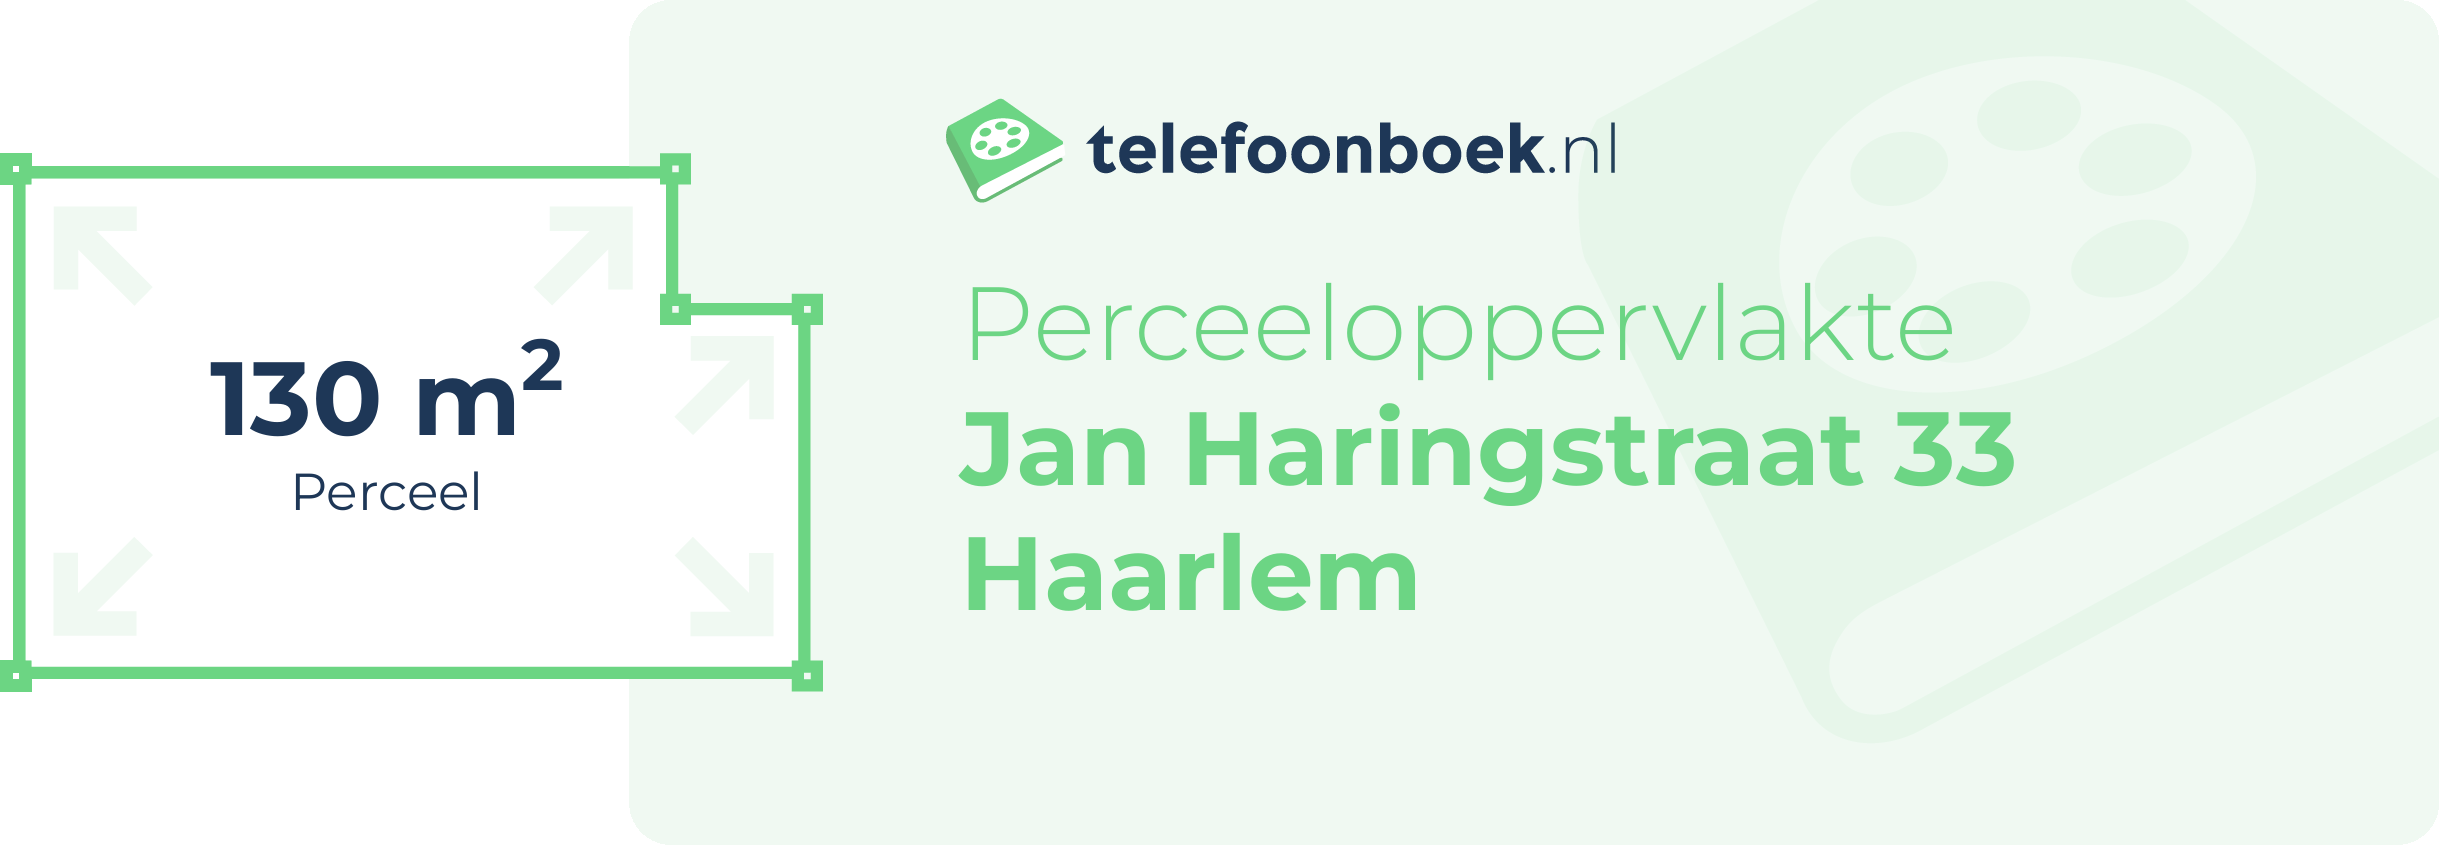 Perceeloppervlakte Jan Haringstraat 33 Haarlem